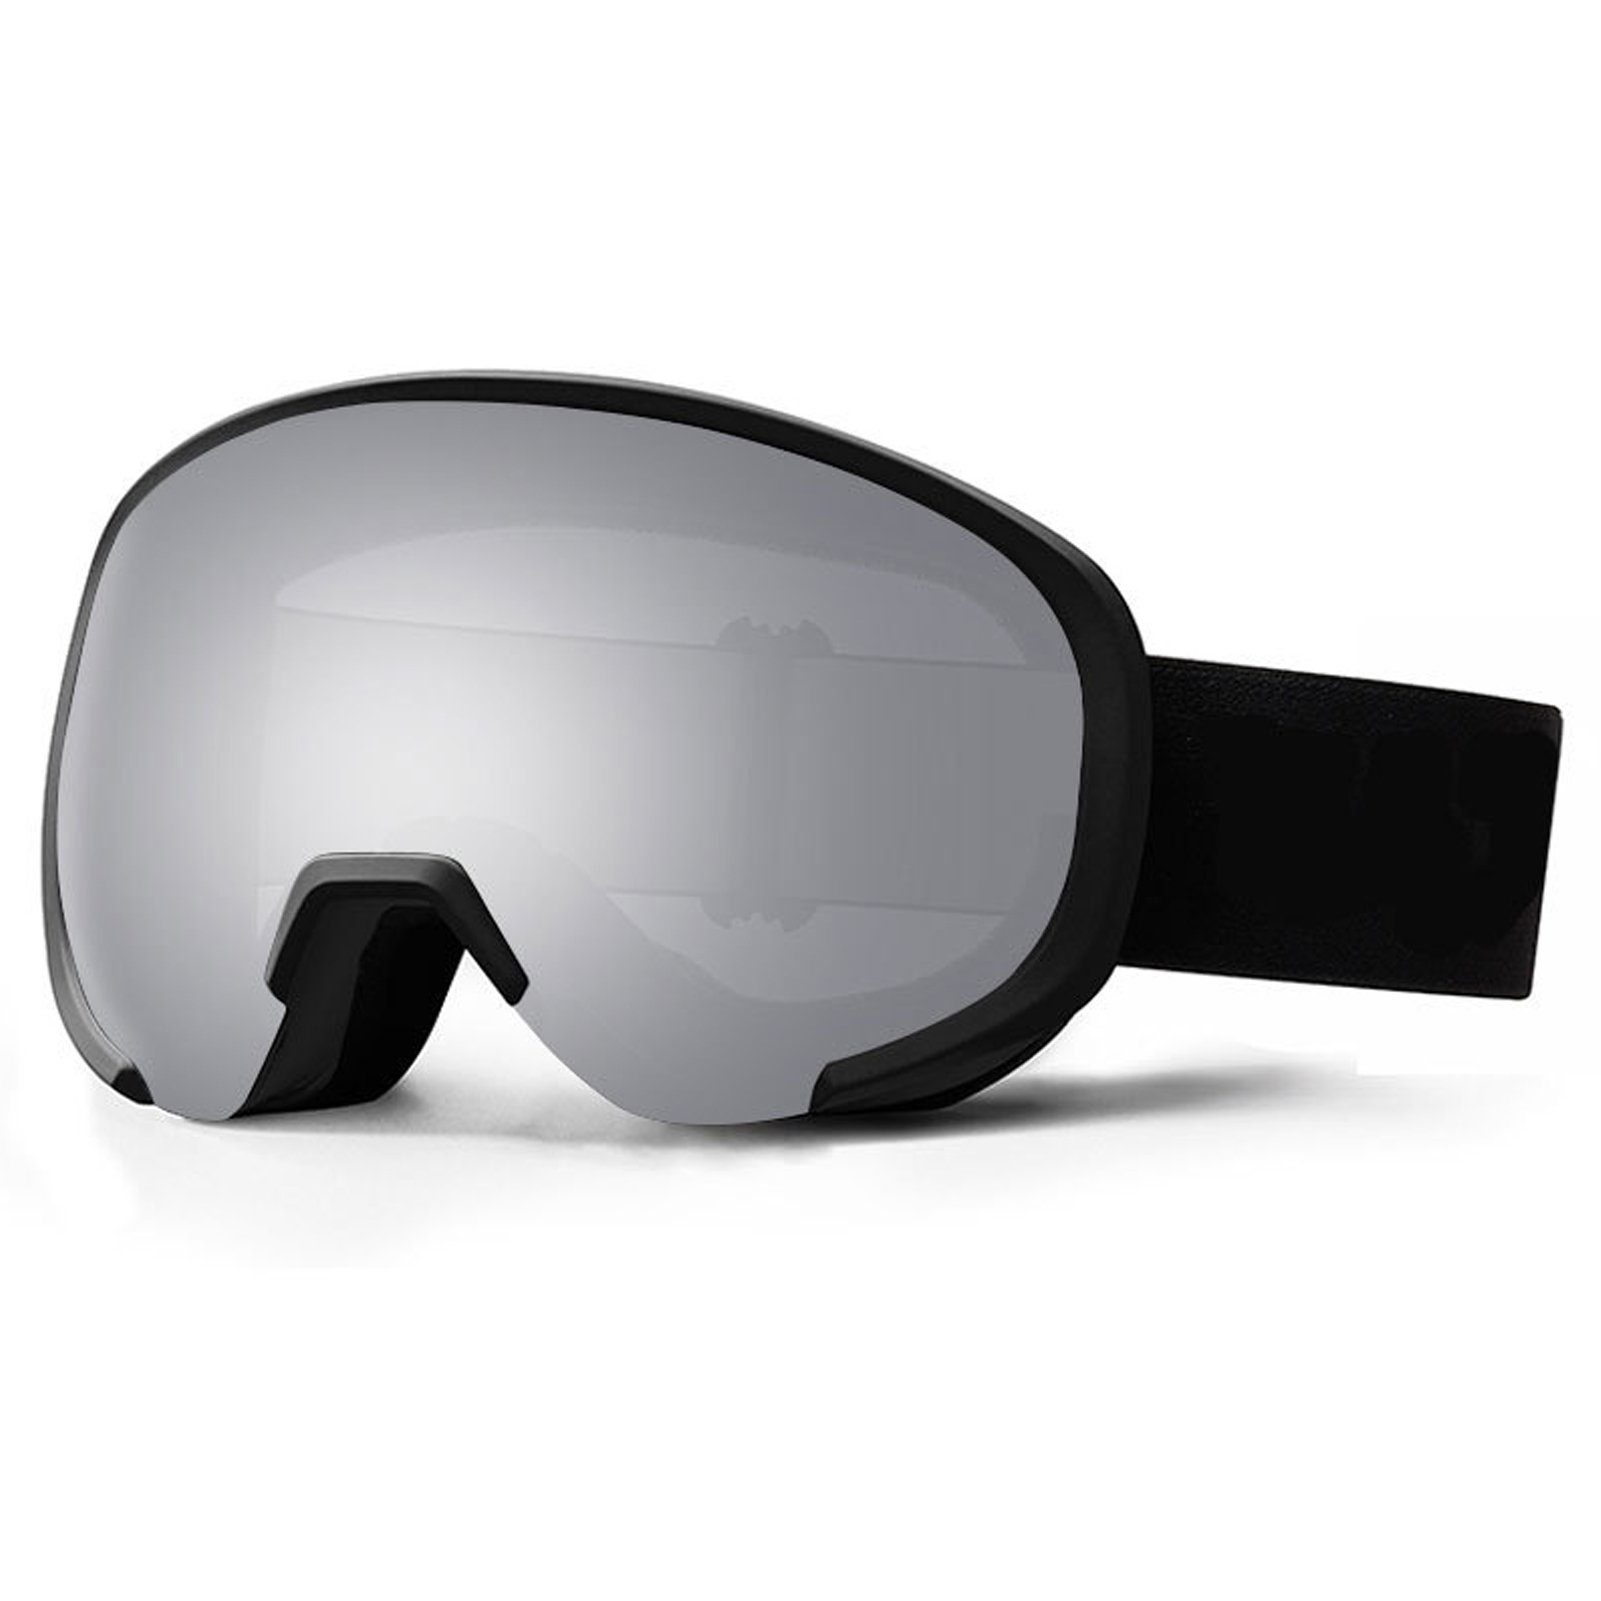 Blusmart Skibrille Ski-Snowboard-Brille Mit Breiter Sicht, Rutschfeste 3